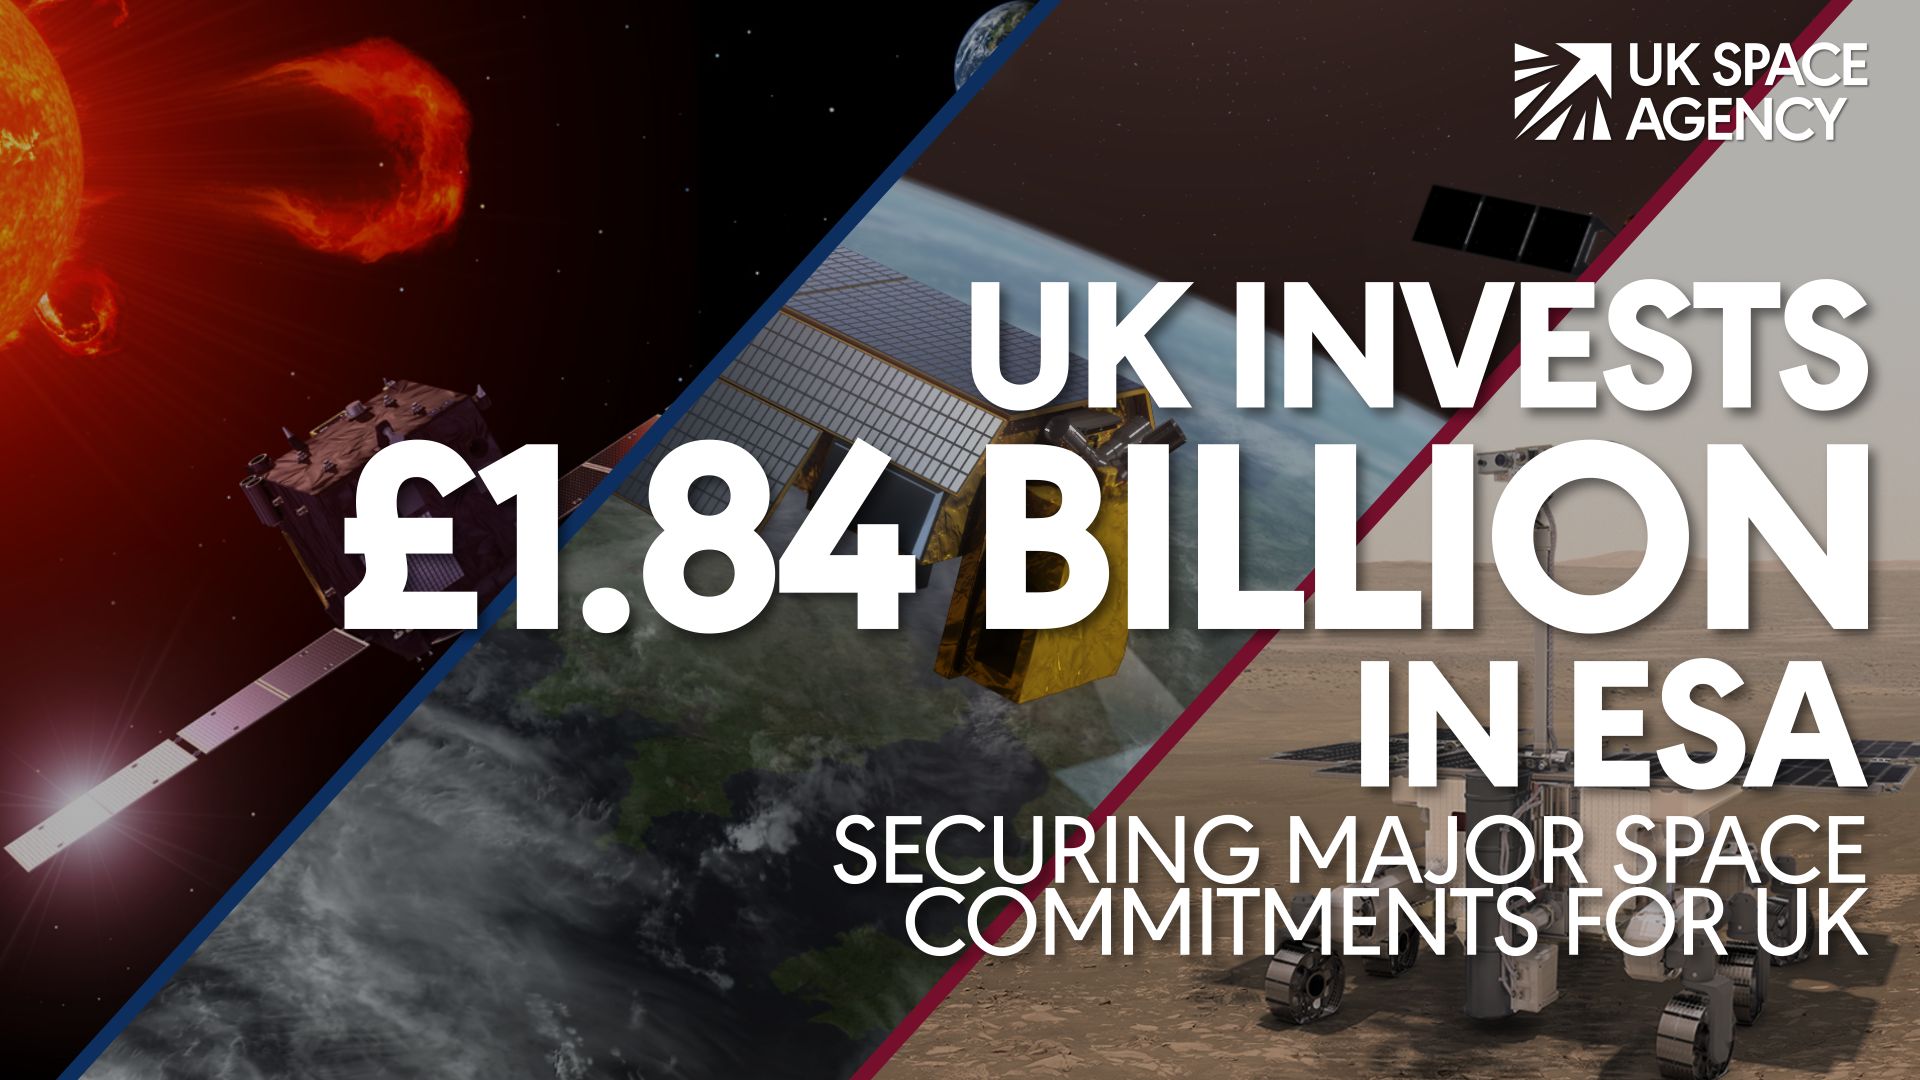 UK secures £1.84 billion investment for ESA programmes